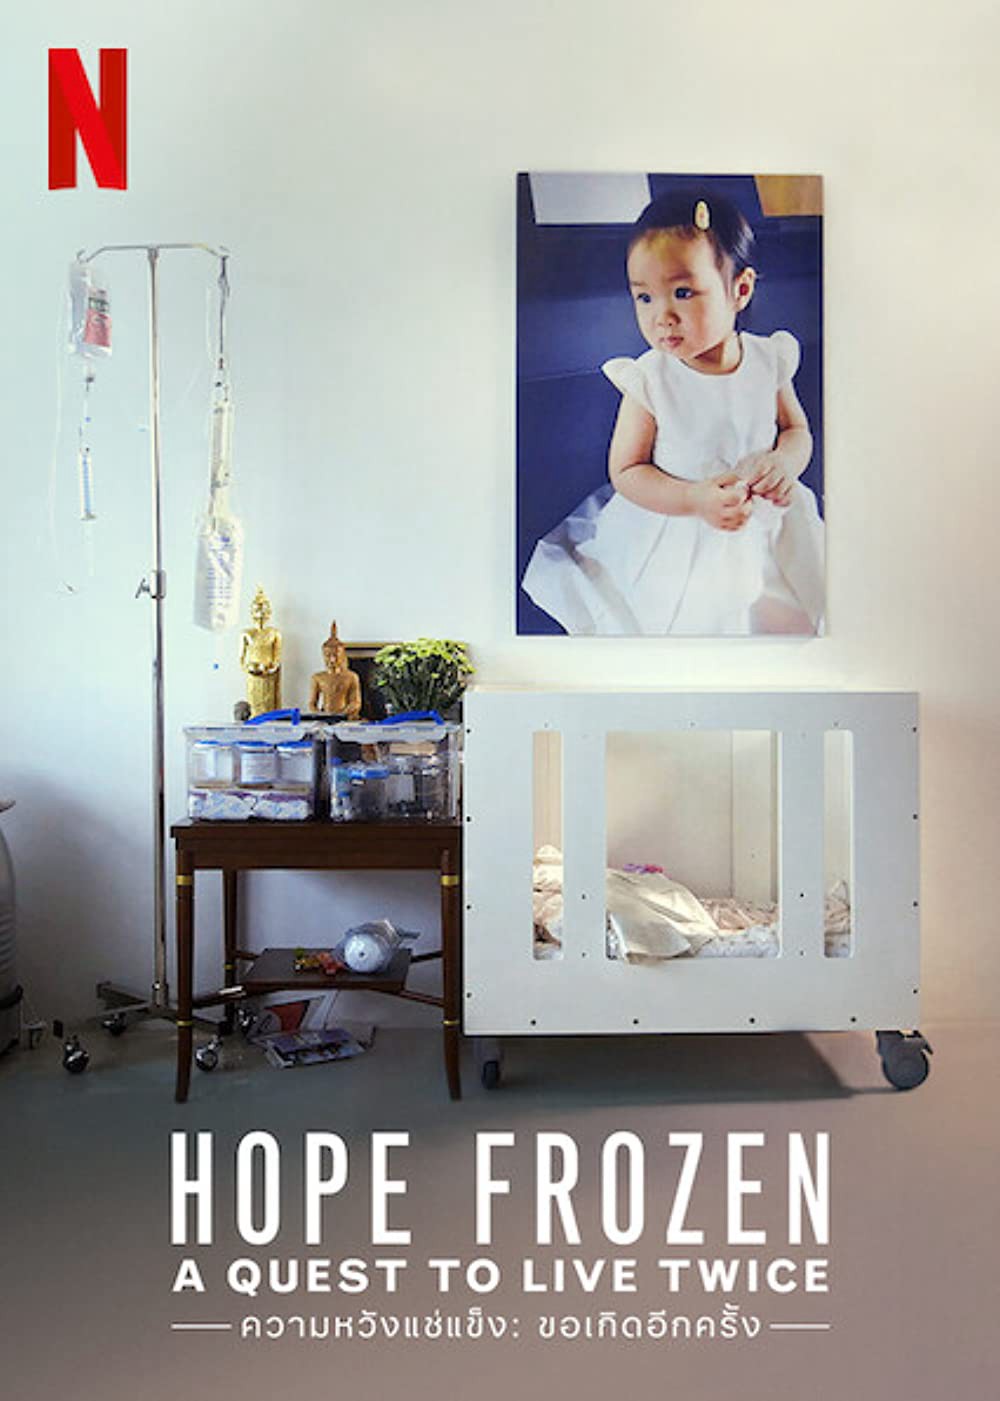 Đóng băng hy vọng: Cơ hội sống lần hai - Đóng băng hy vọng: Cơ hội sống lần hai (2020)